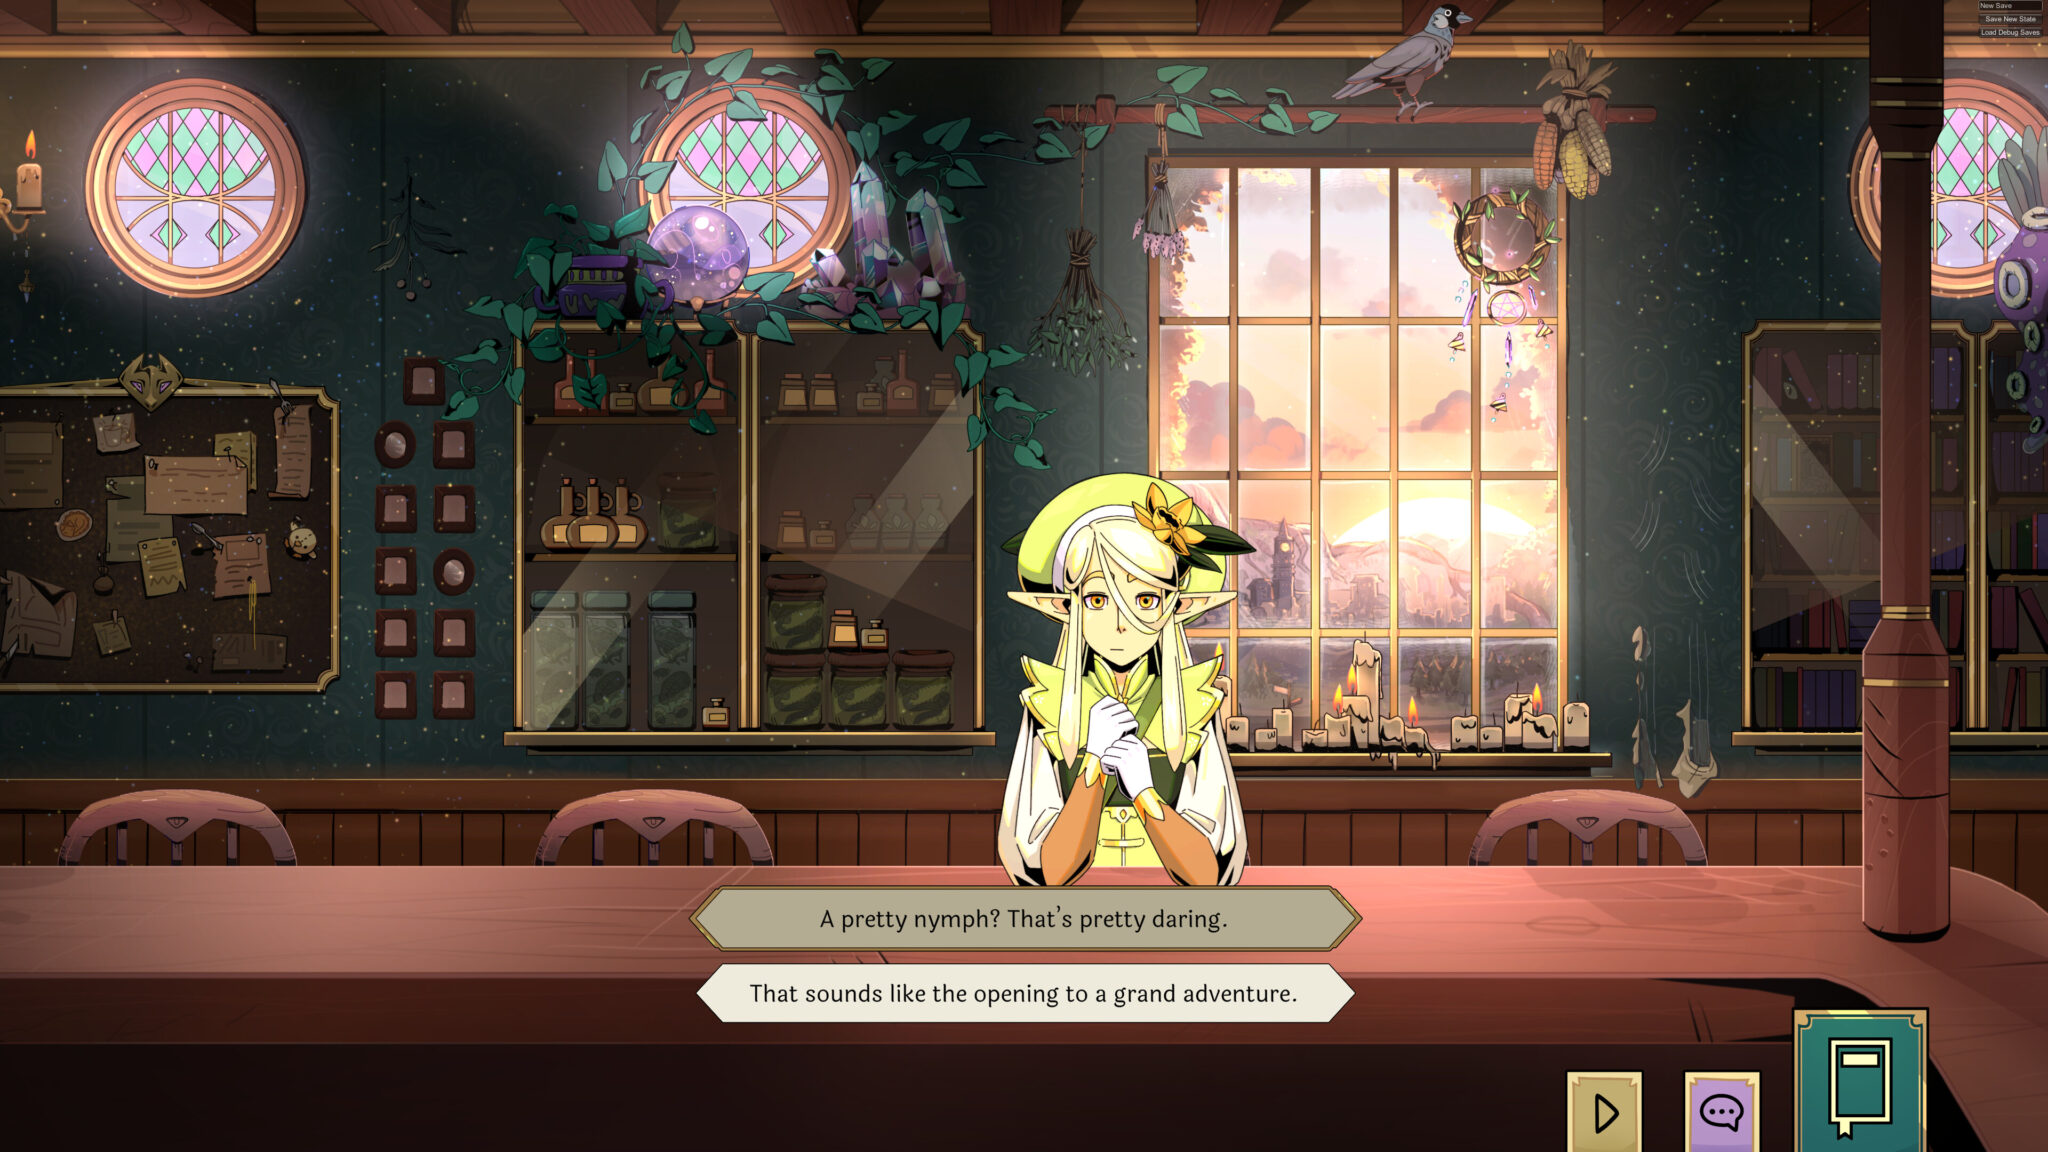 Tavern Talk screenshot of the innkeeper talking to an elf patron